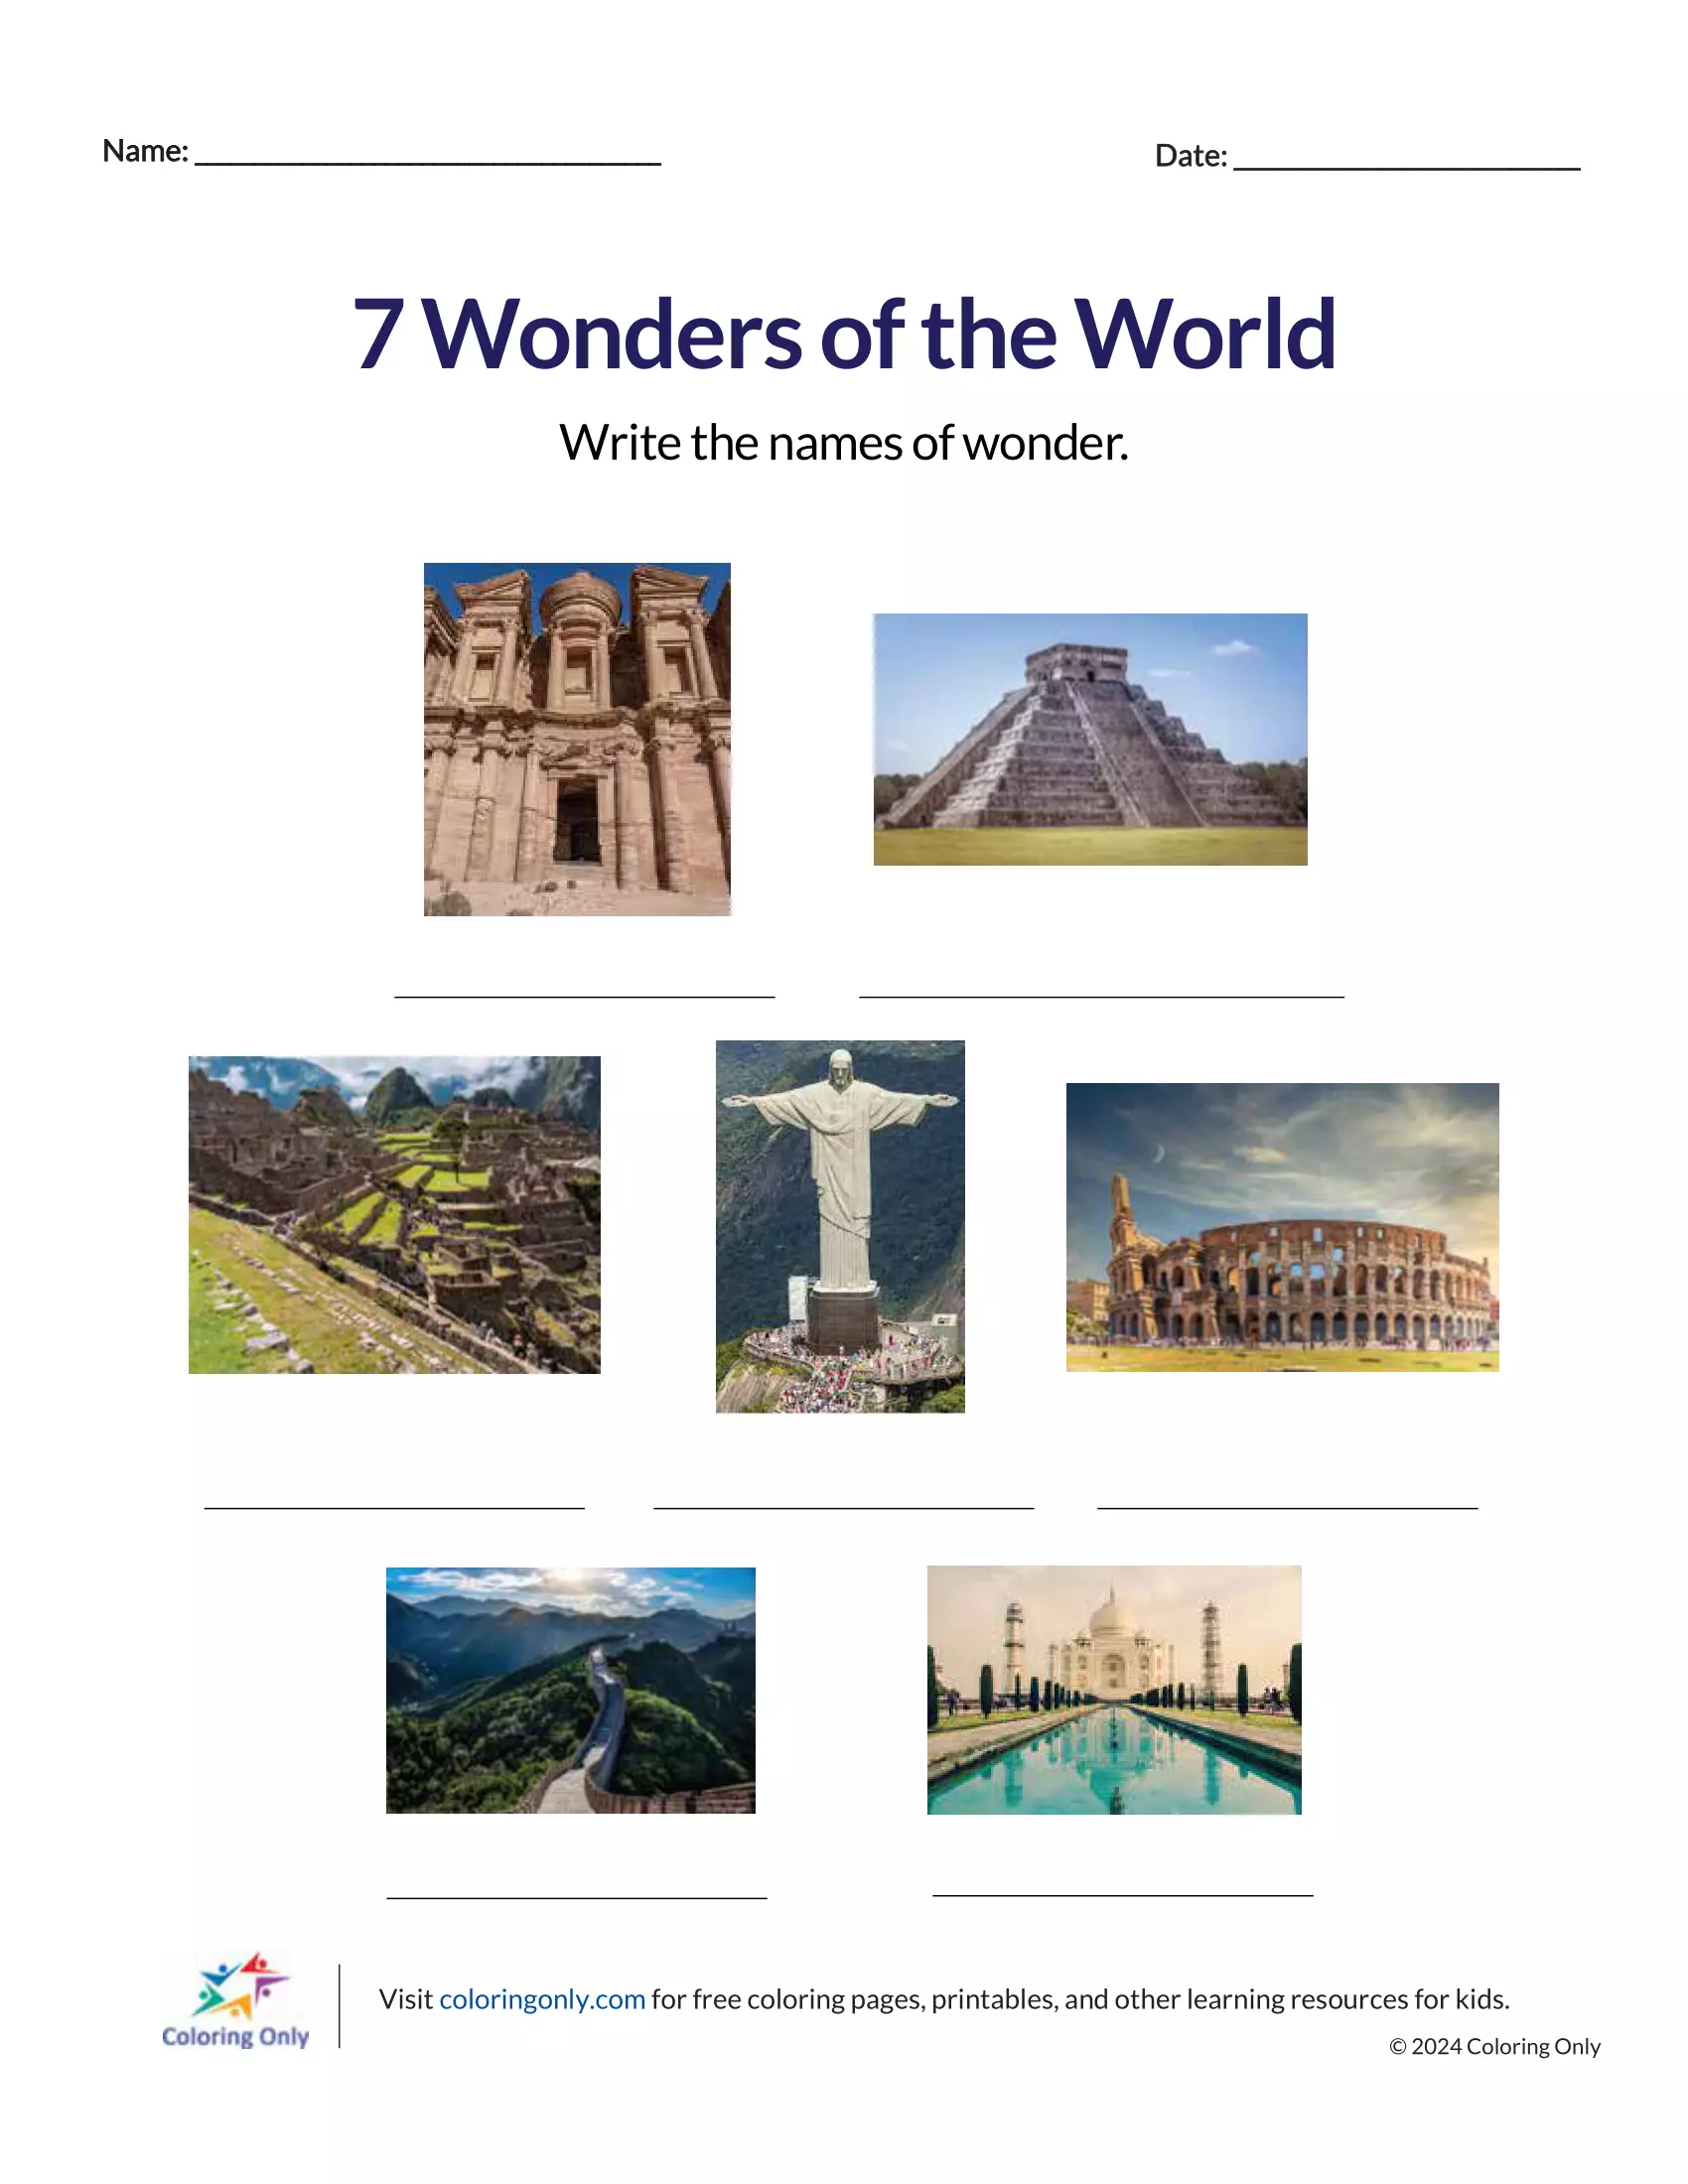 7 Wonders of the World Free Printable Worksheet